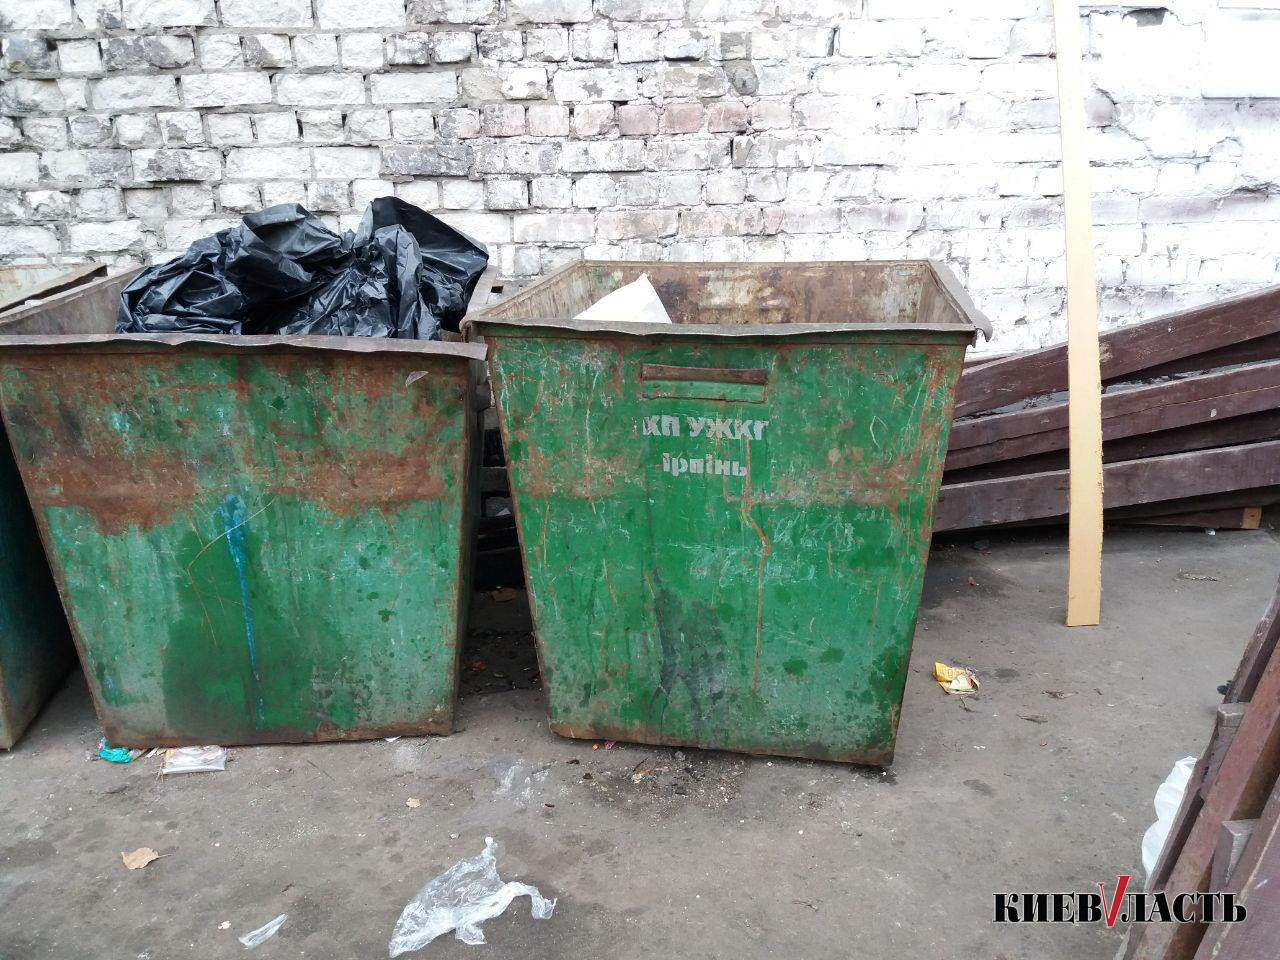 Власти Ирпеня борются с мусором только лишь закупкой новых контейнеров и мусоровозов